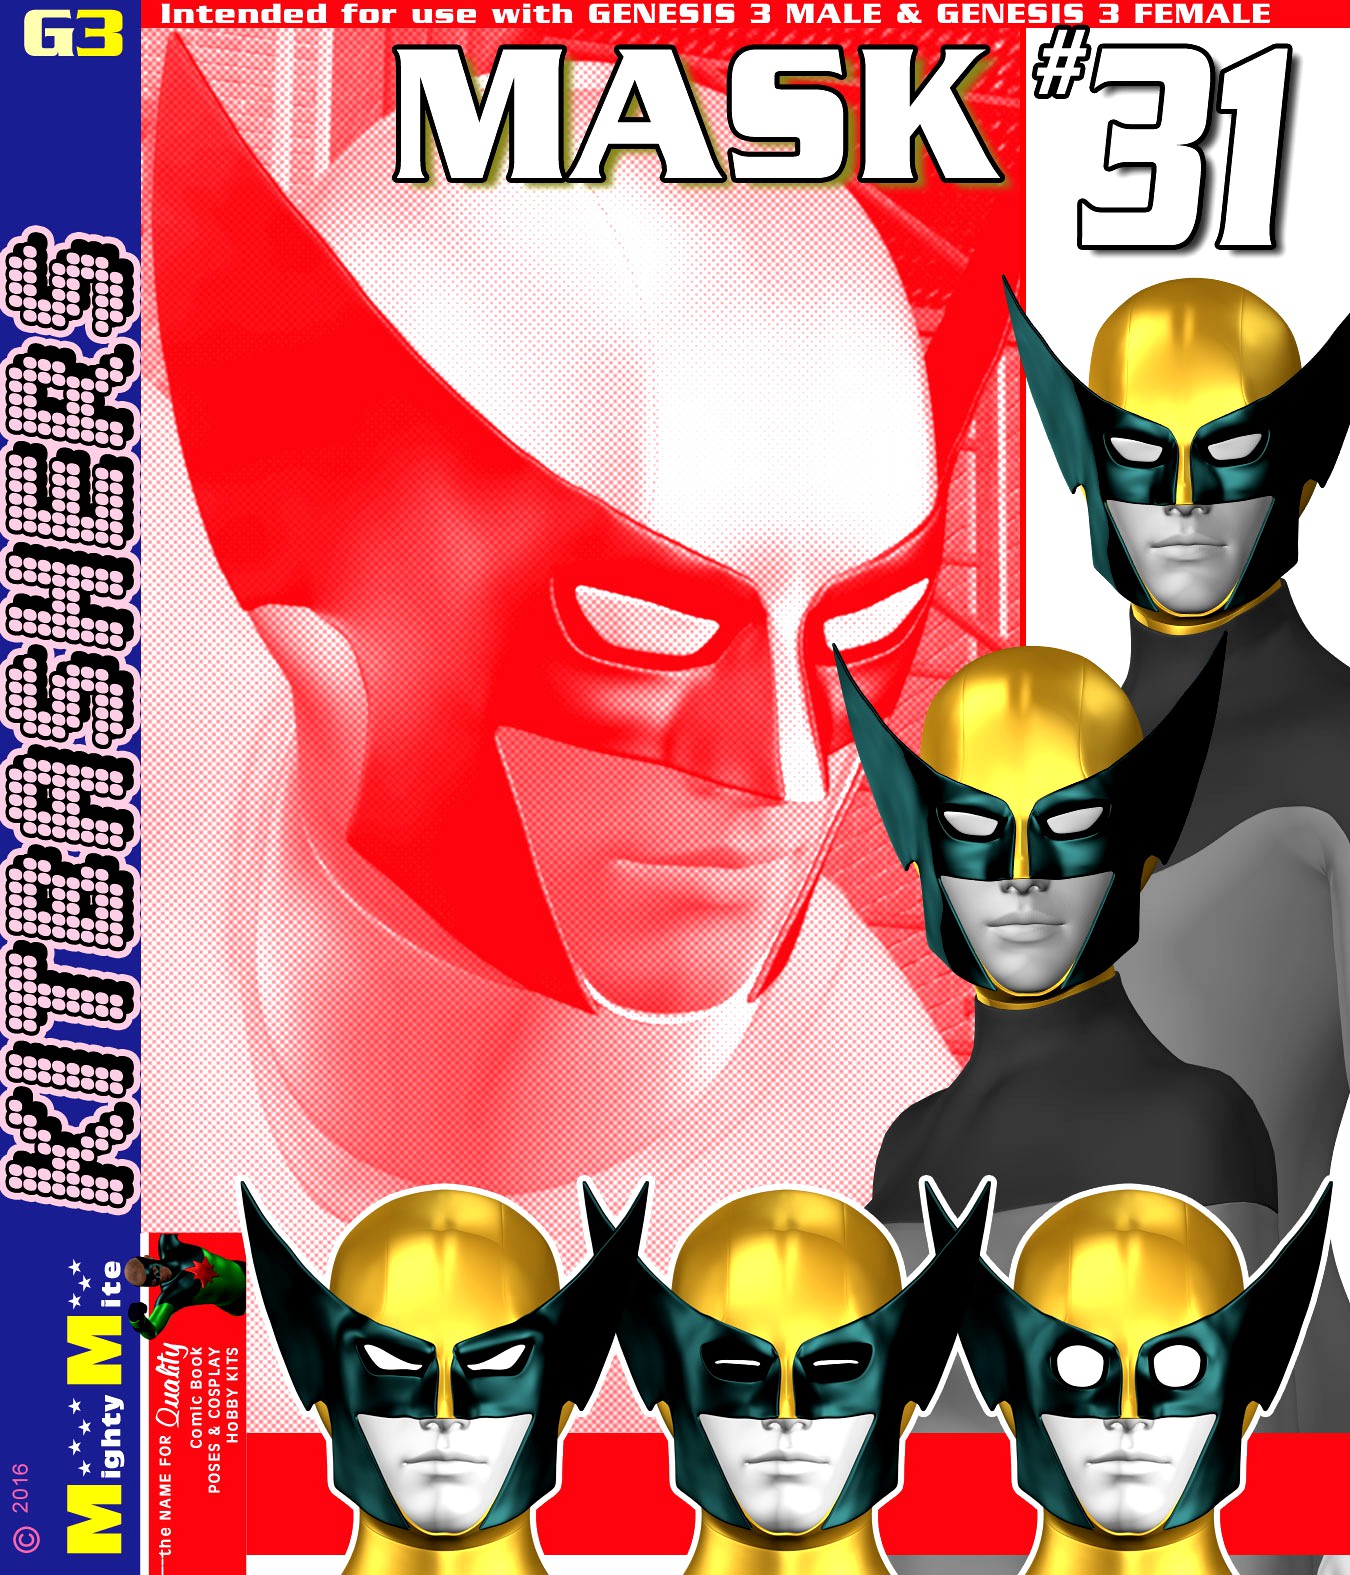 Mask 031 MMKBG3